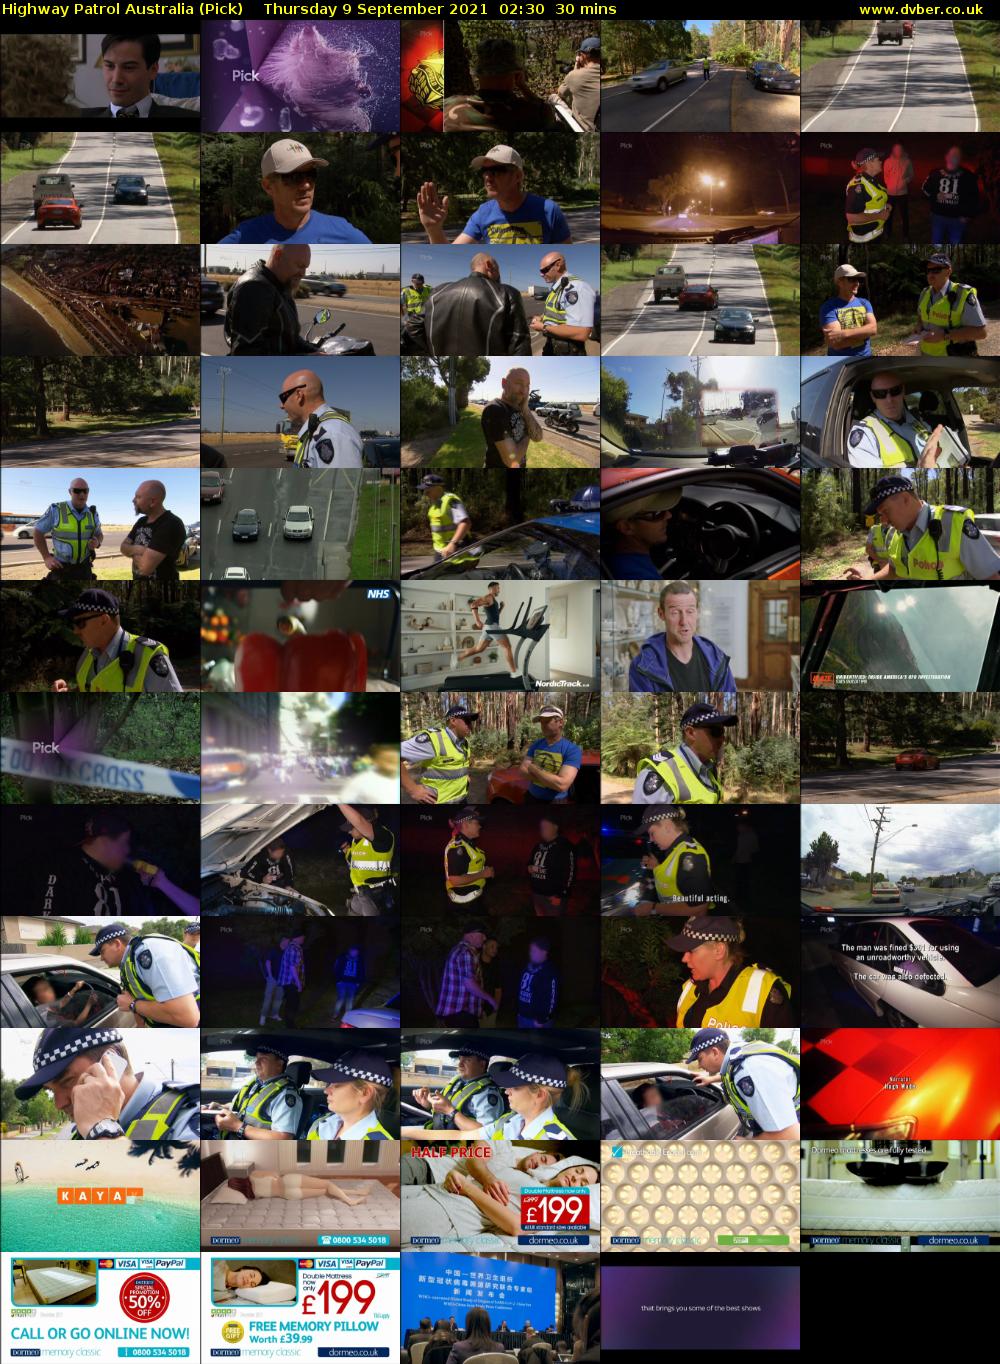 Highway Patrol Australia (Pick) Thursday 9 September 2021 03:30 - 04:00